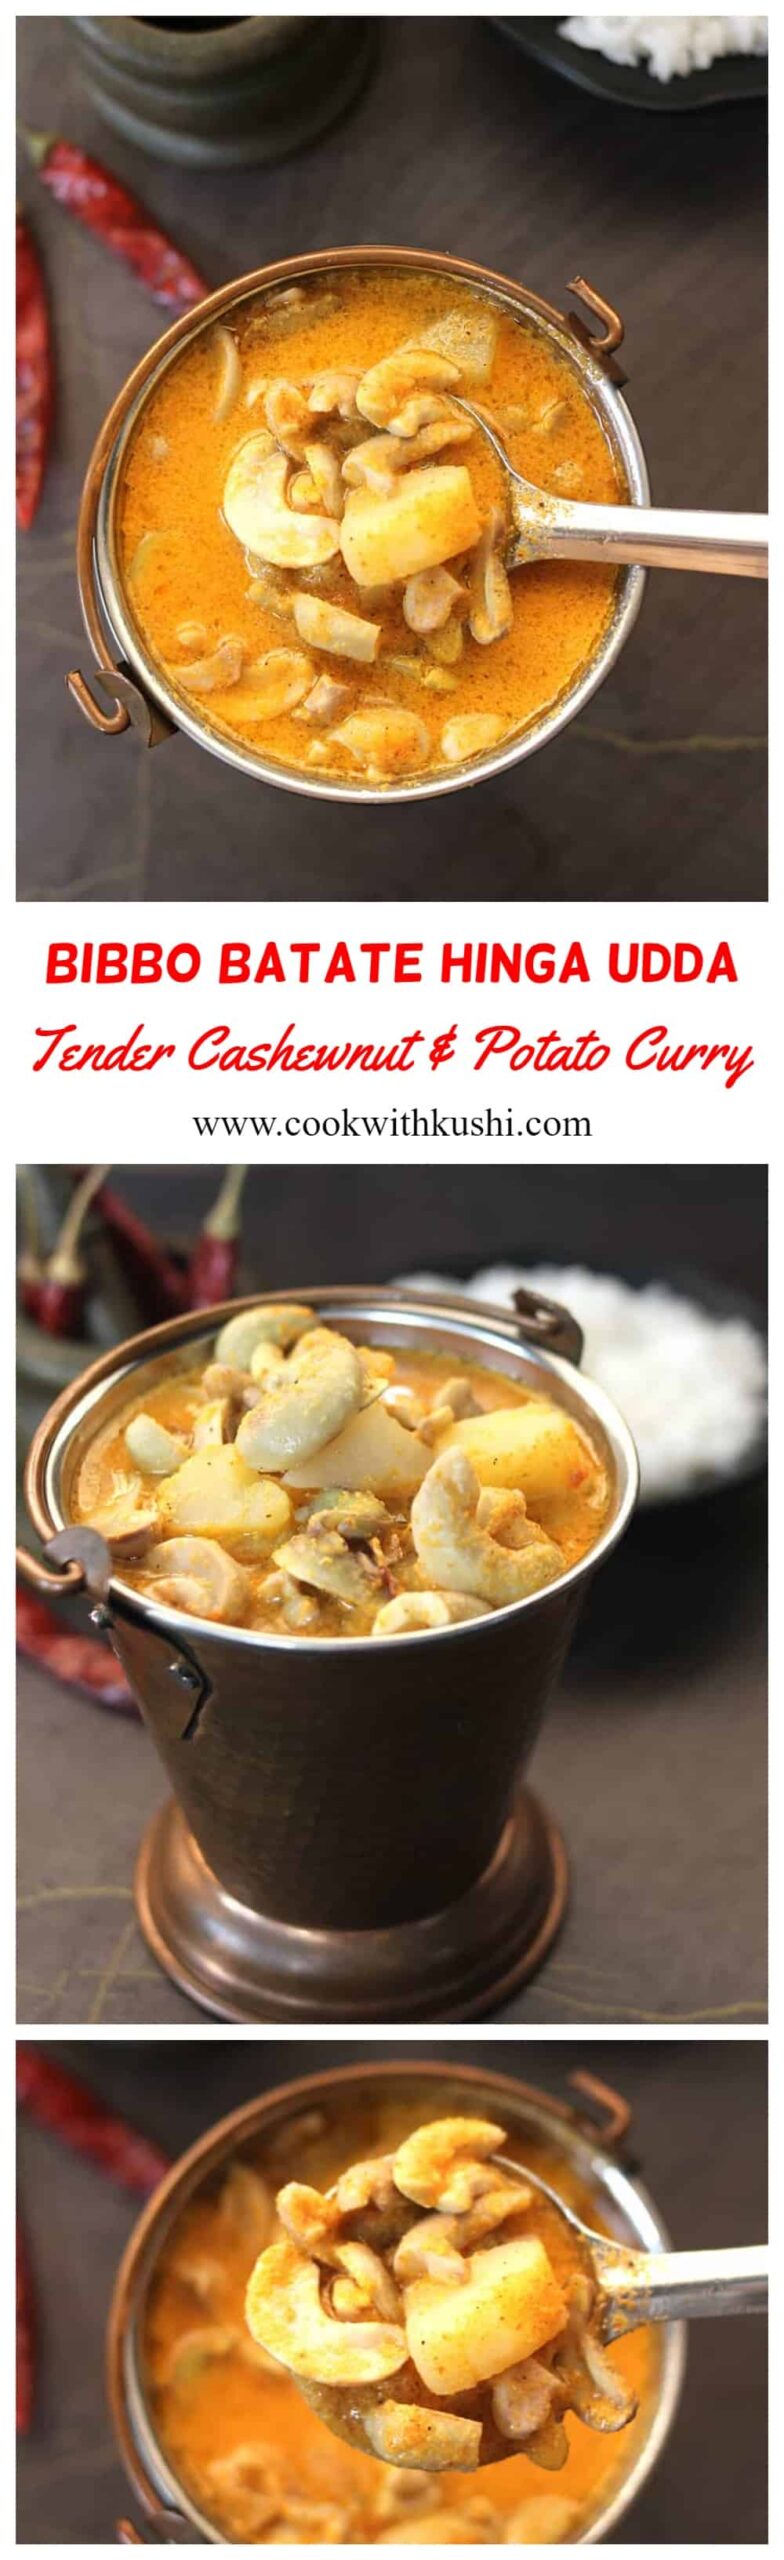 Bibbo Batate Hinga Udda Batato bibbe humman popular konkani recipes, no onion garlic fasting food